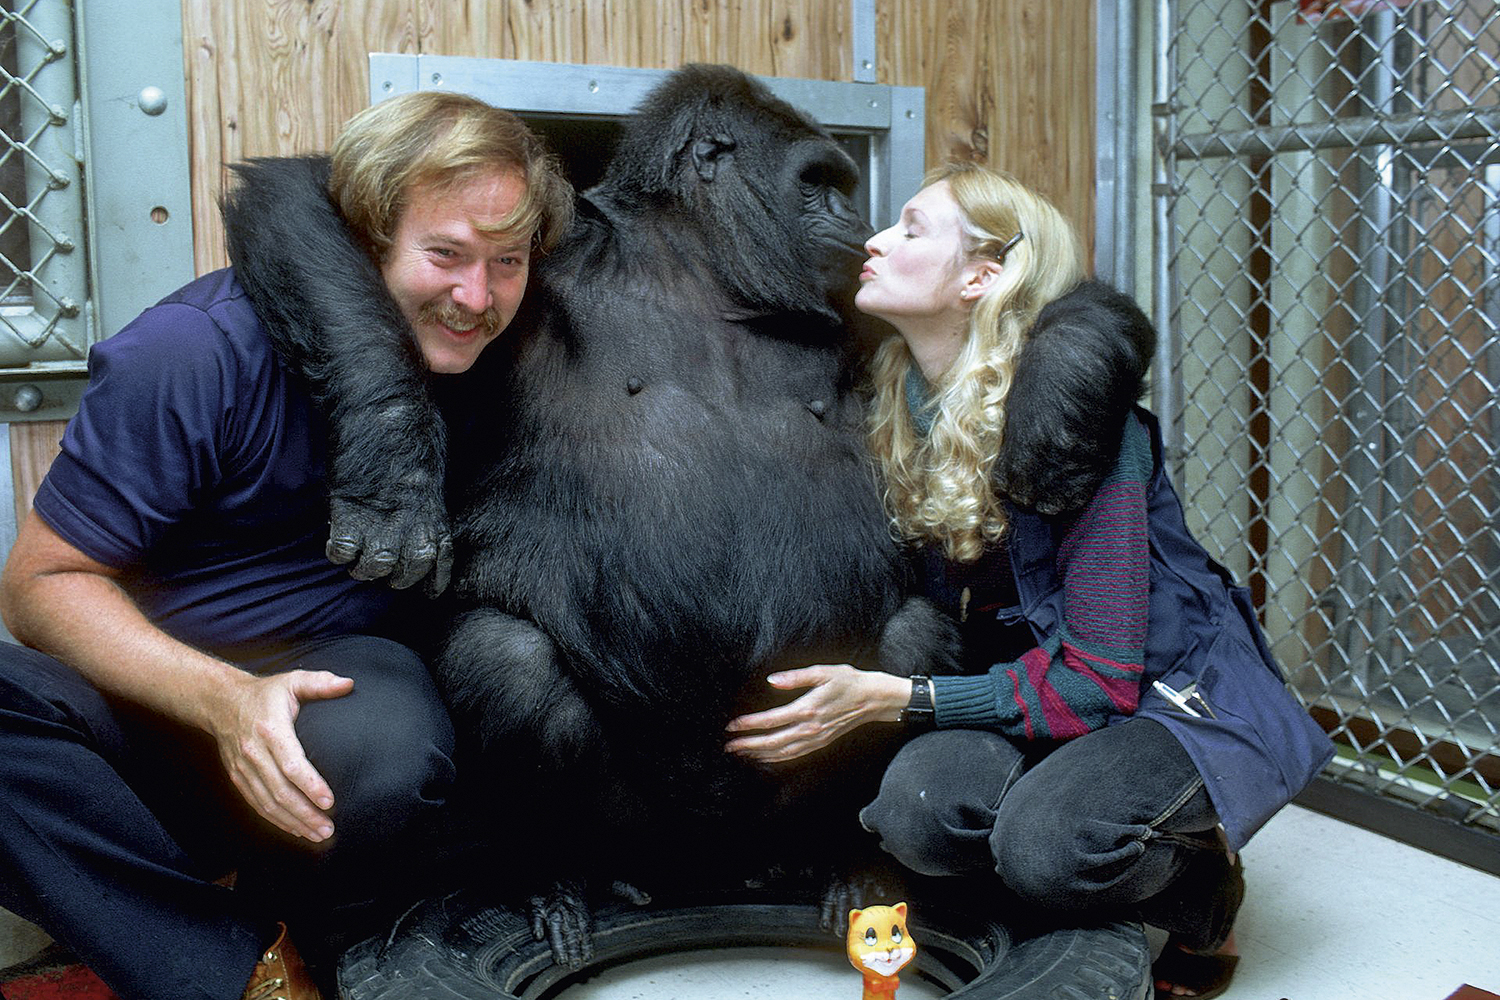 ELOCUENTE - Koko junto a sus cuidadores: la gorila entendía inglés -